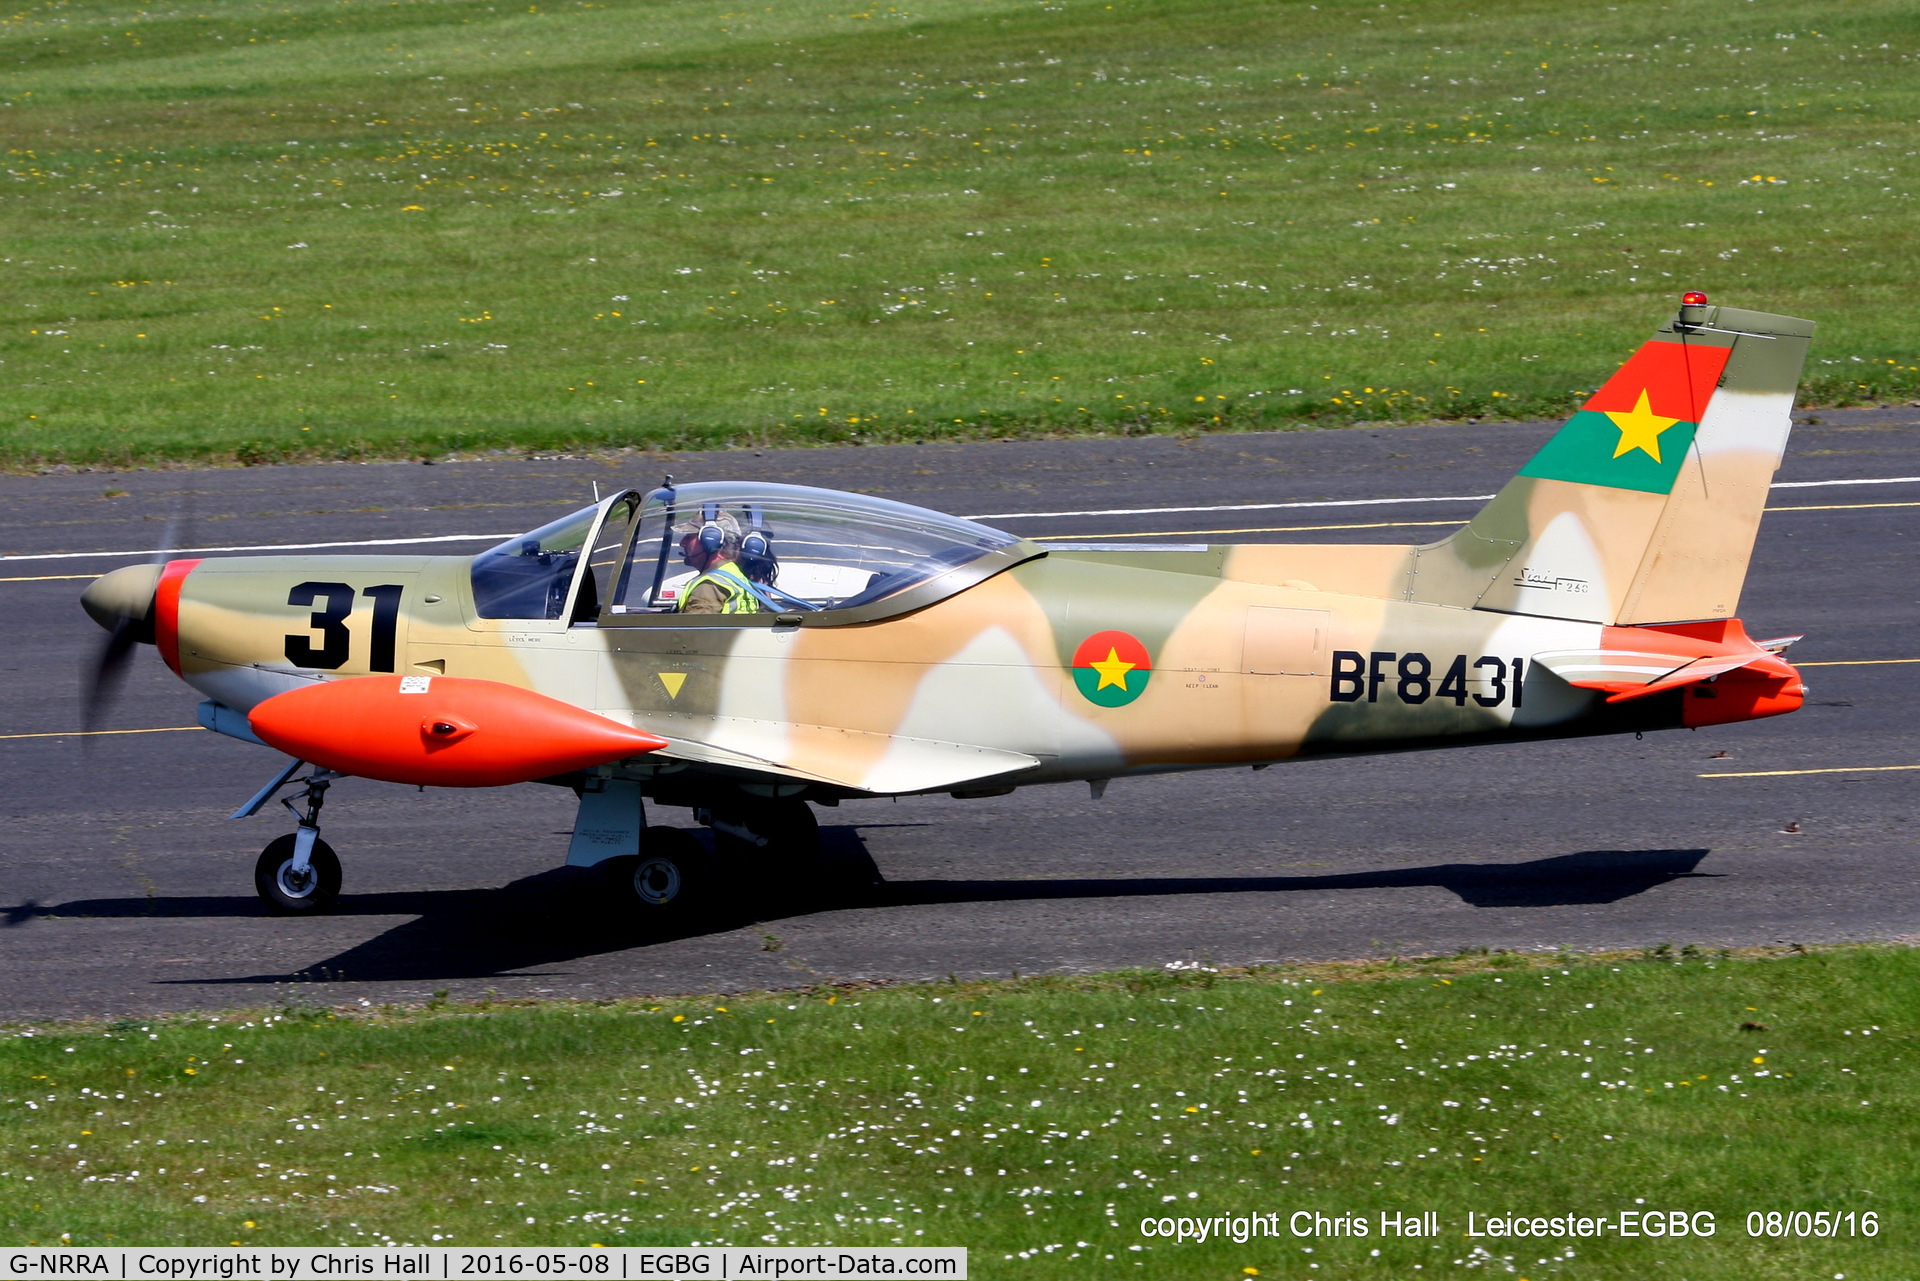 G-NRRA, 1968 SIAI-Marchetti SF-260W Warrior C/N 116, Royal Aero Club air race at Leicester